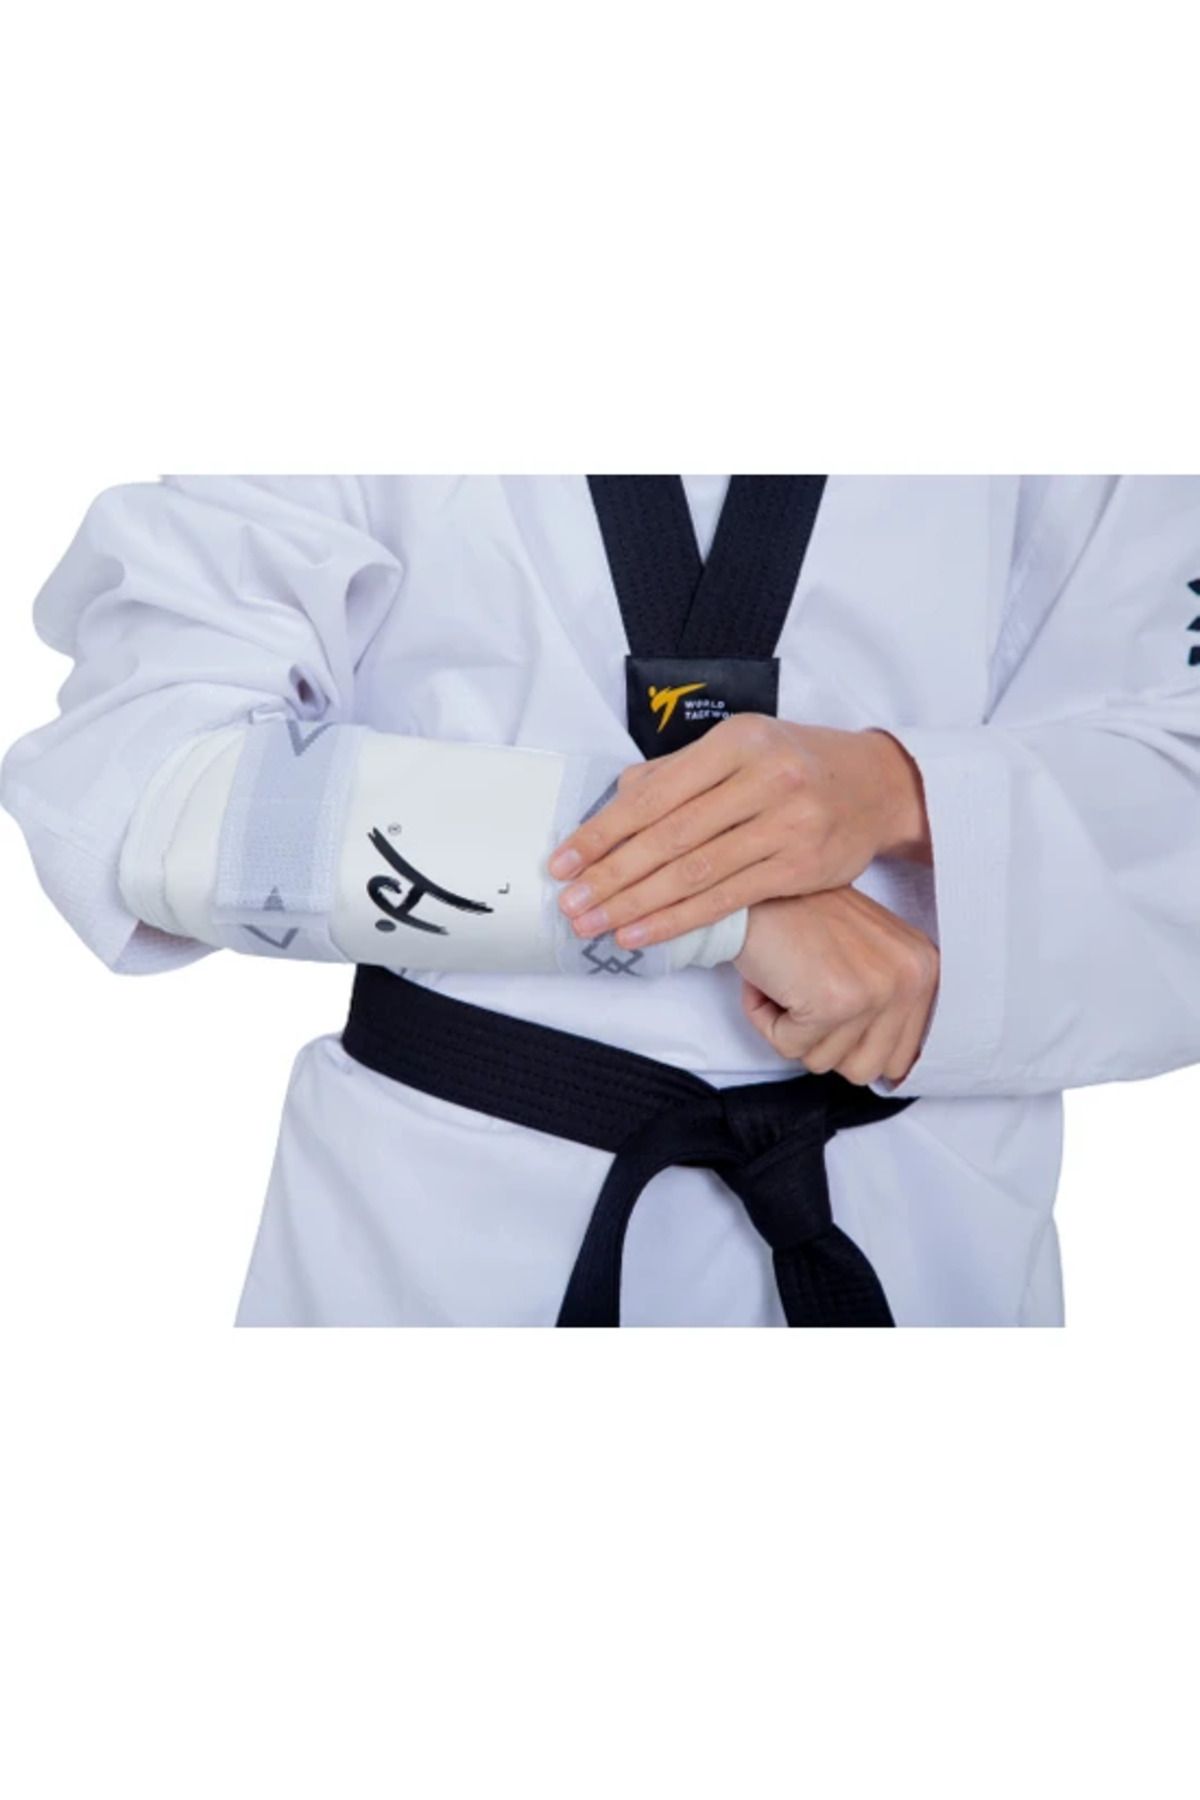 HAŞADO Haşado Taekwondo Kol ve Kaval Koruyucu Takımı